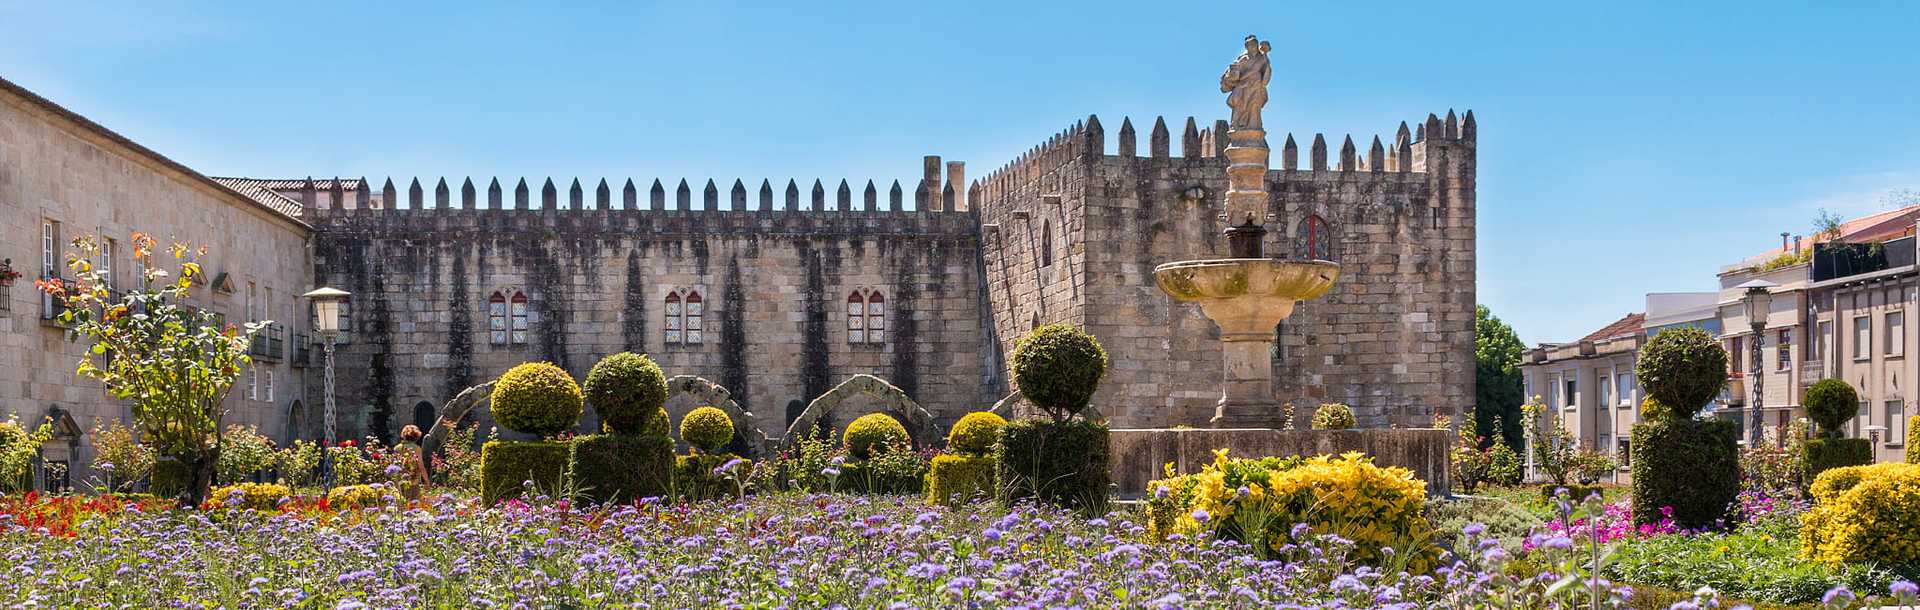 Castle of Braga, Portugal